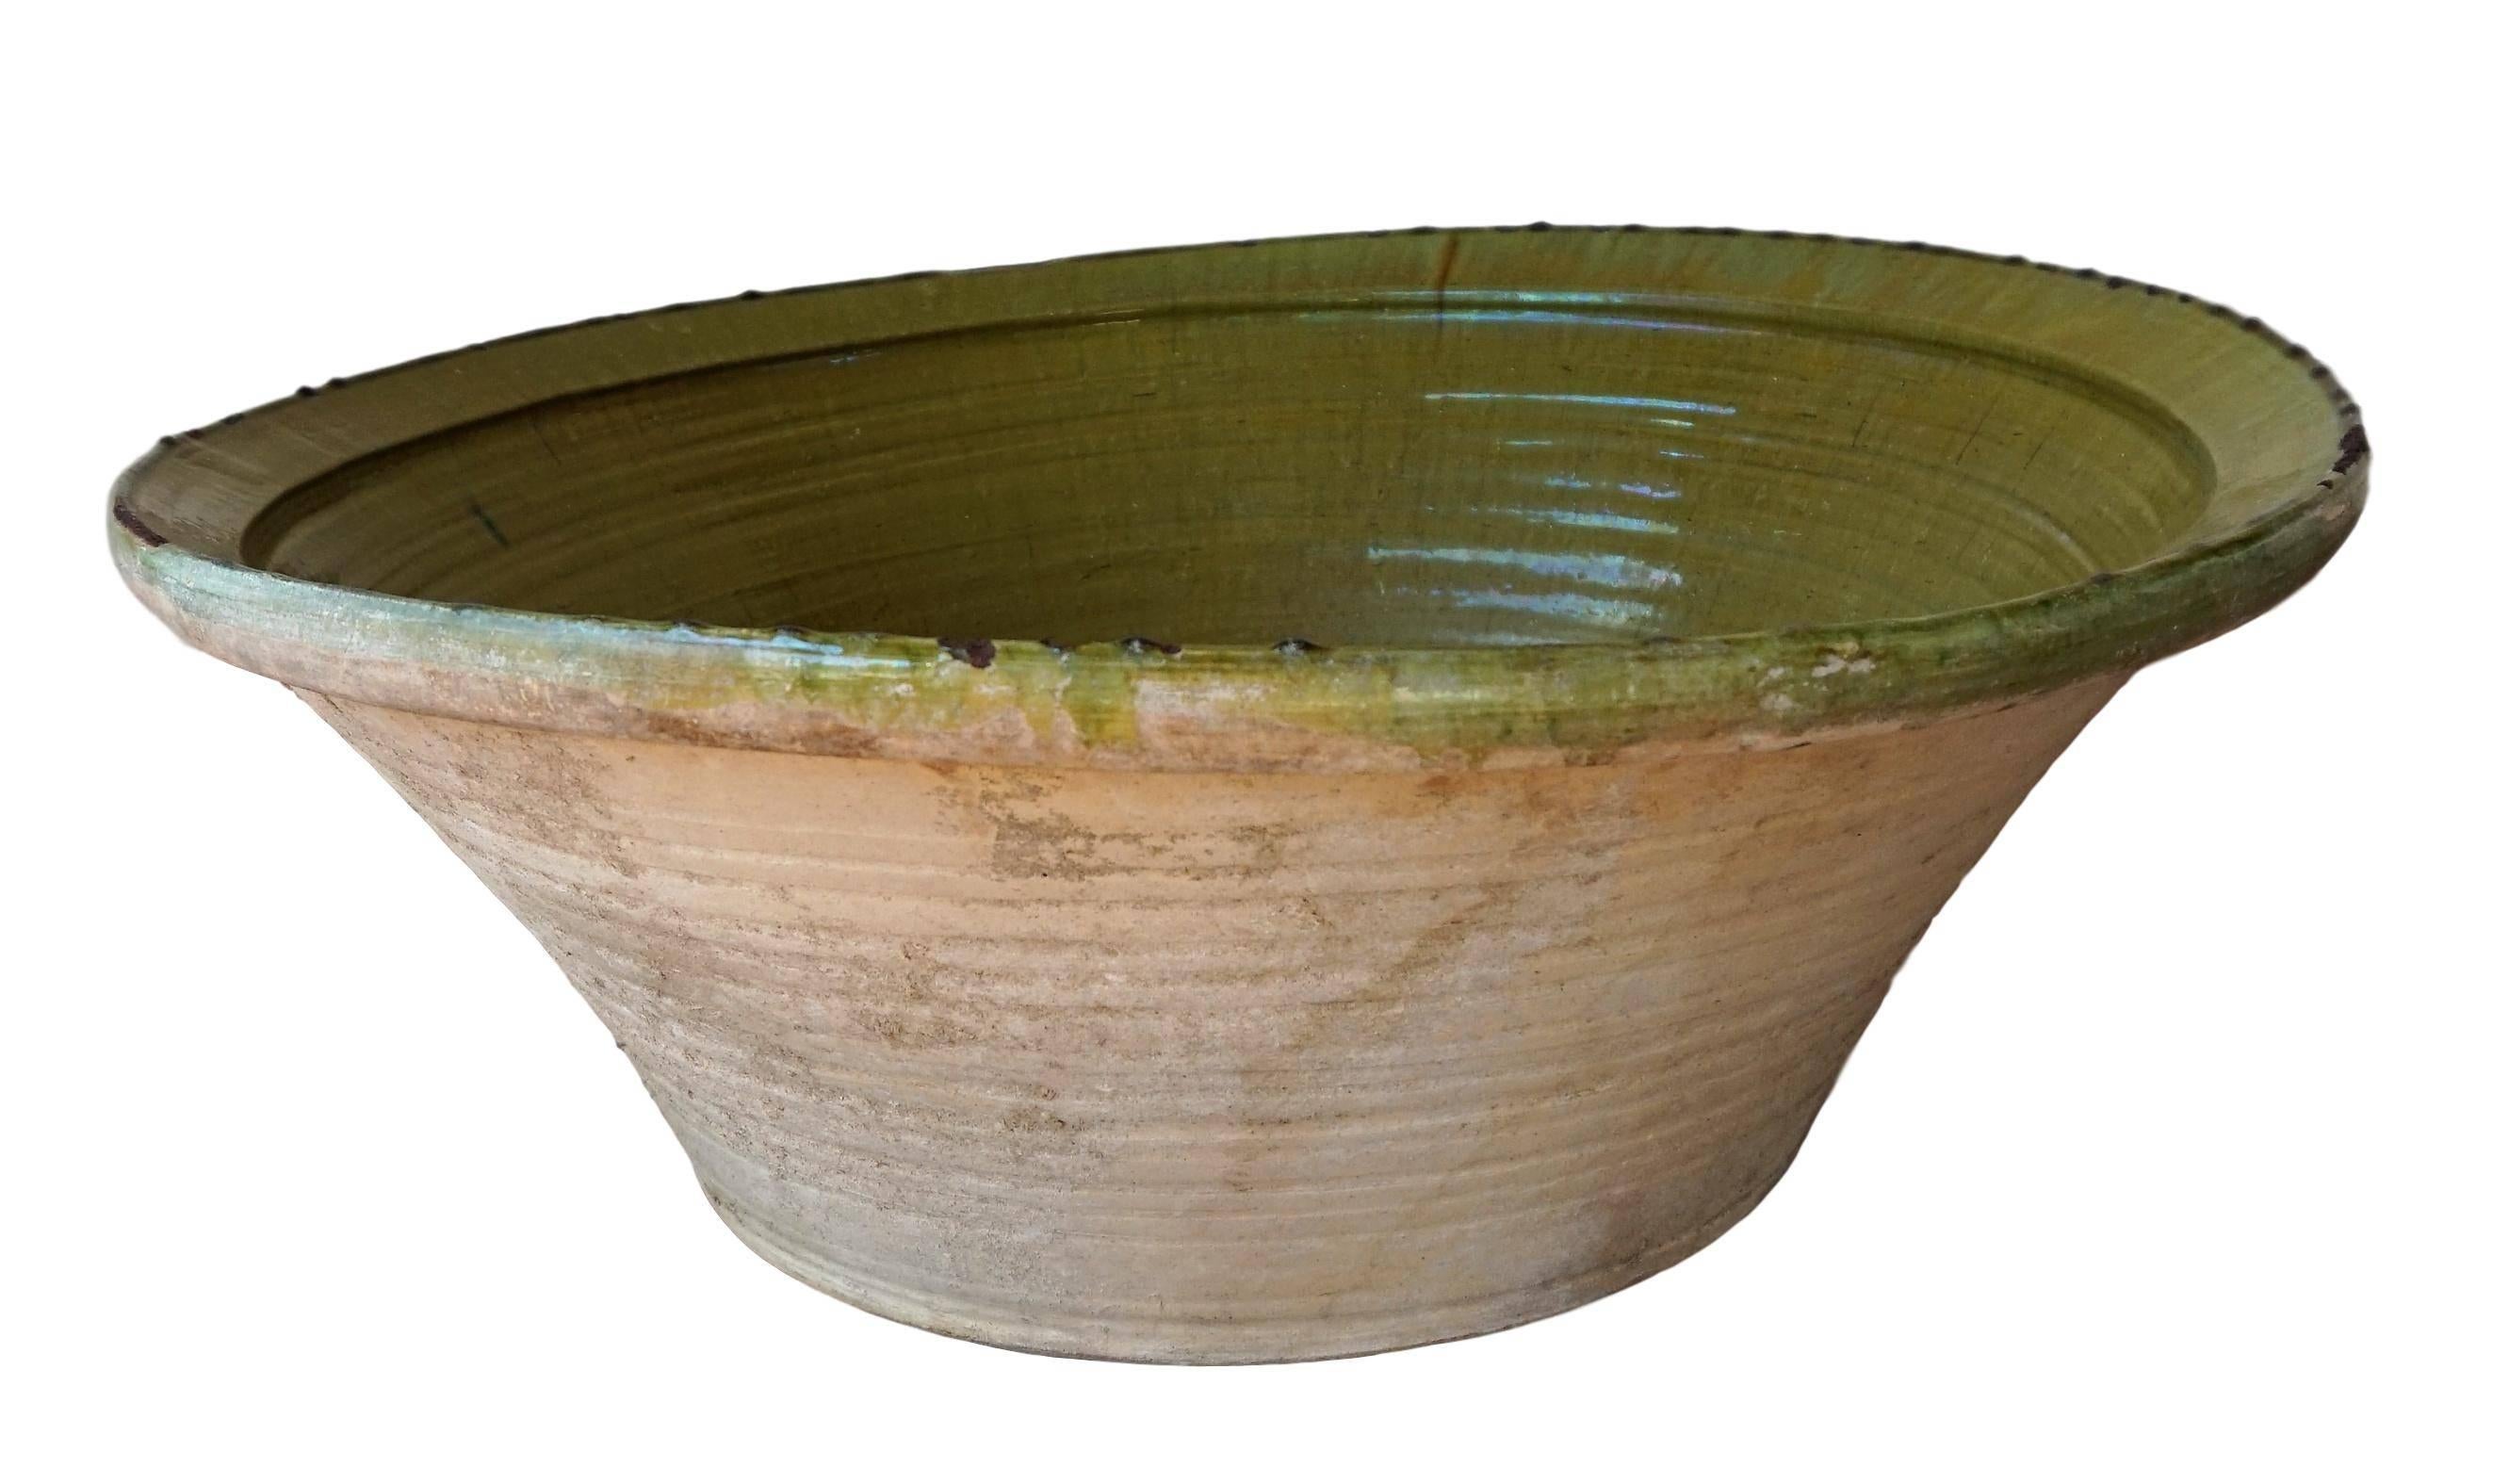 Grand bol en poterie de grès de couleur verte et crème, unique en son genre, jeté et émaillé à la main. Épais et glacé.

Il s'agirait d'un excellent jeu d'eau intérieur ou extérieur. Il peut également être utilisé à l'intérieur ou à l'extérieur